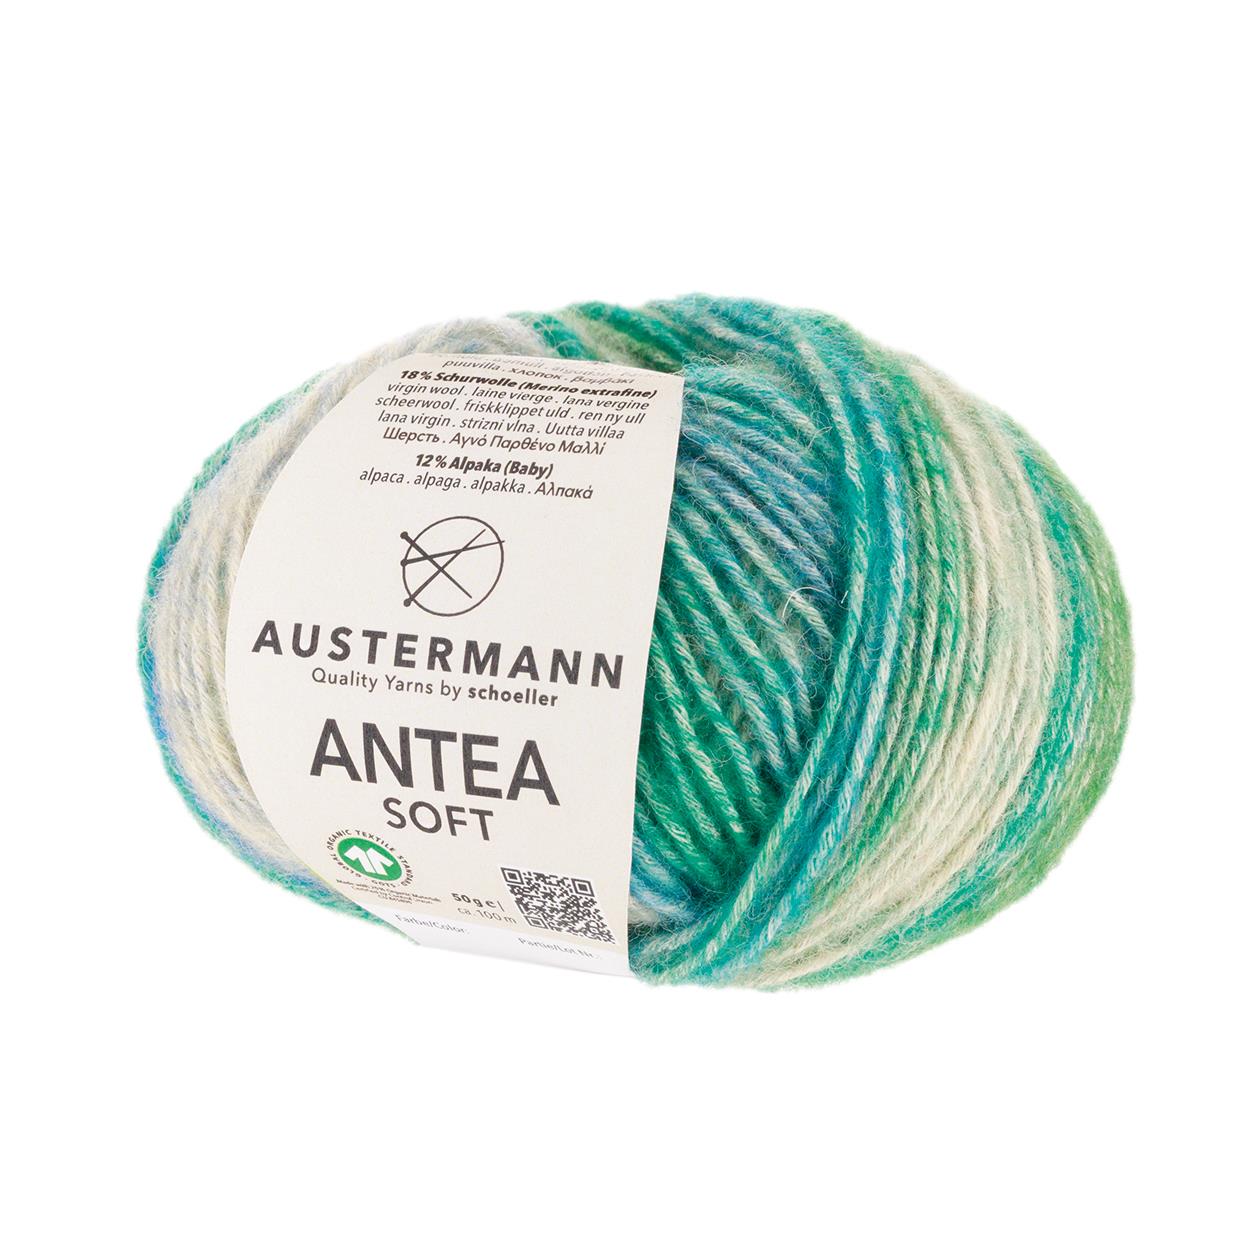 Antea Soft 50g, 90308, colour avocado 3